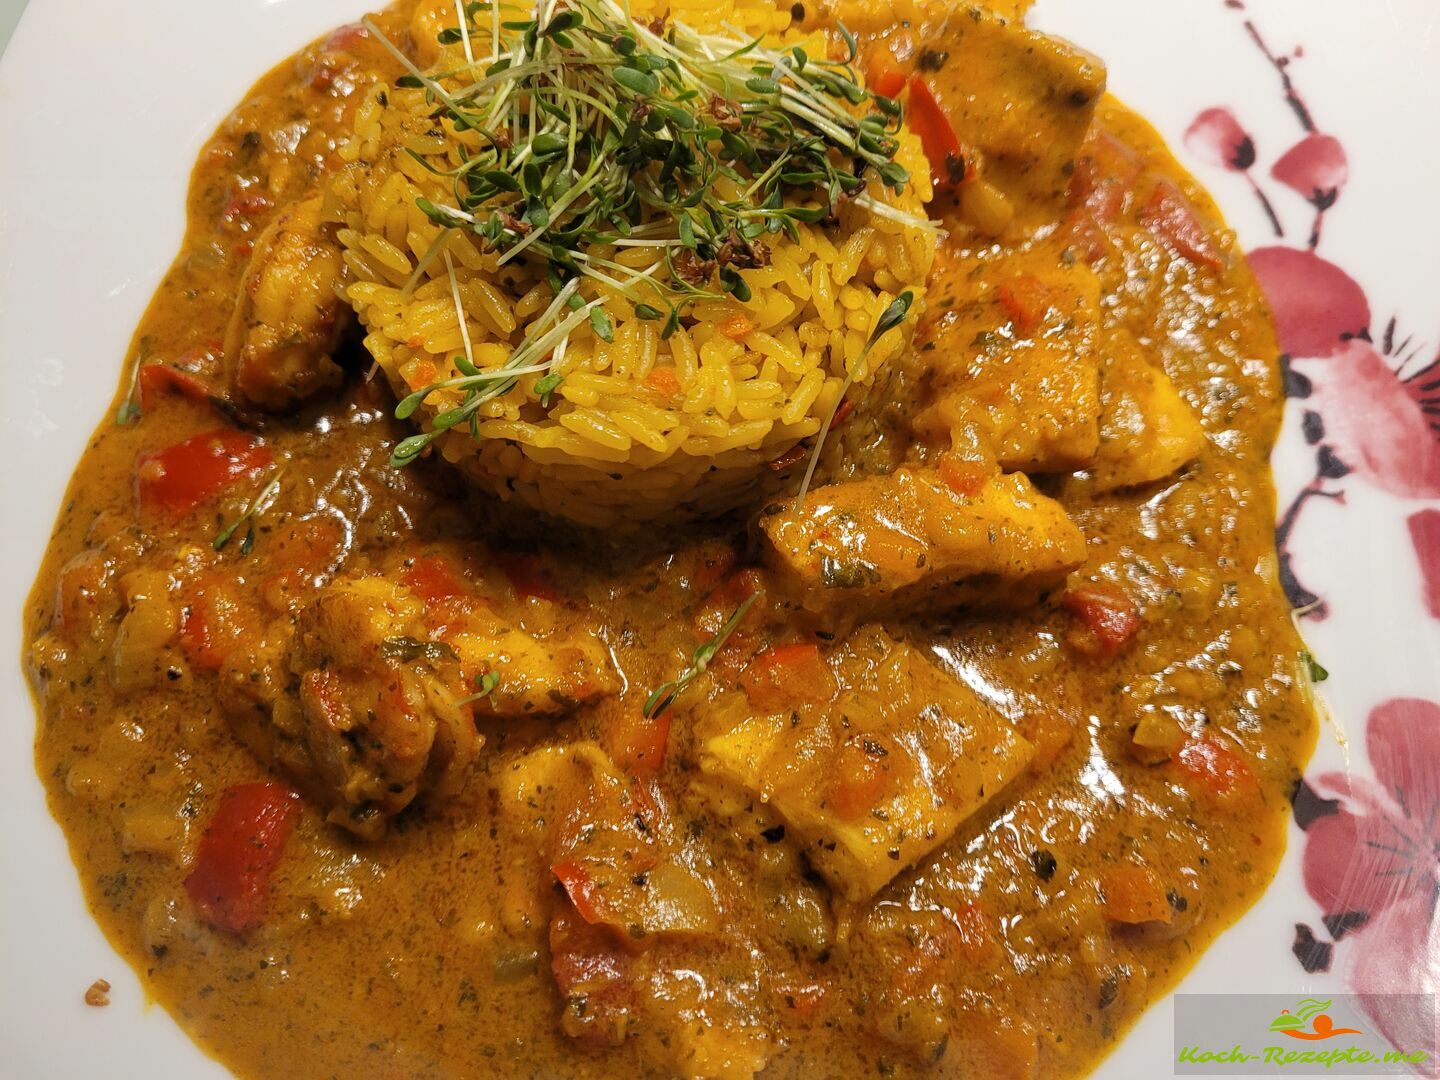 Fischcurry Indischer Art mit Reis und Gemüse.Steinbeißer Fischfilet